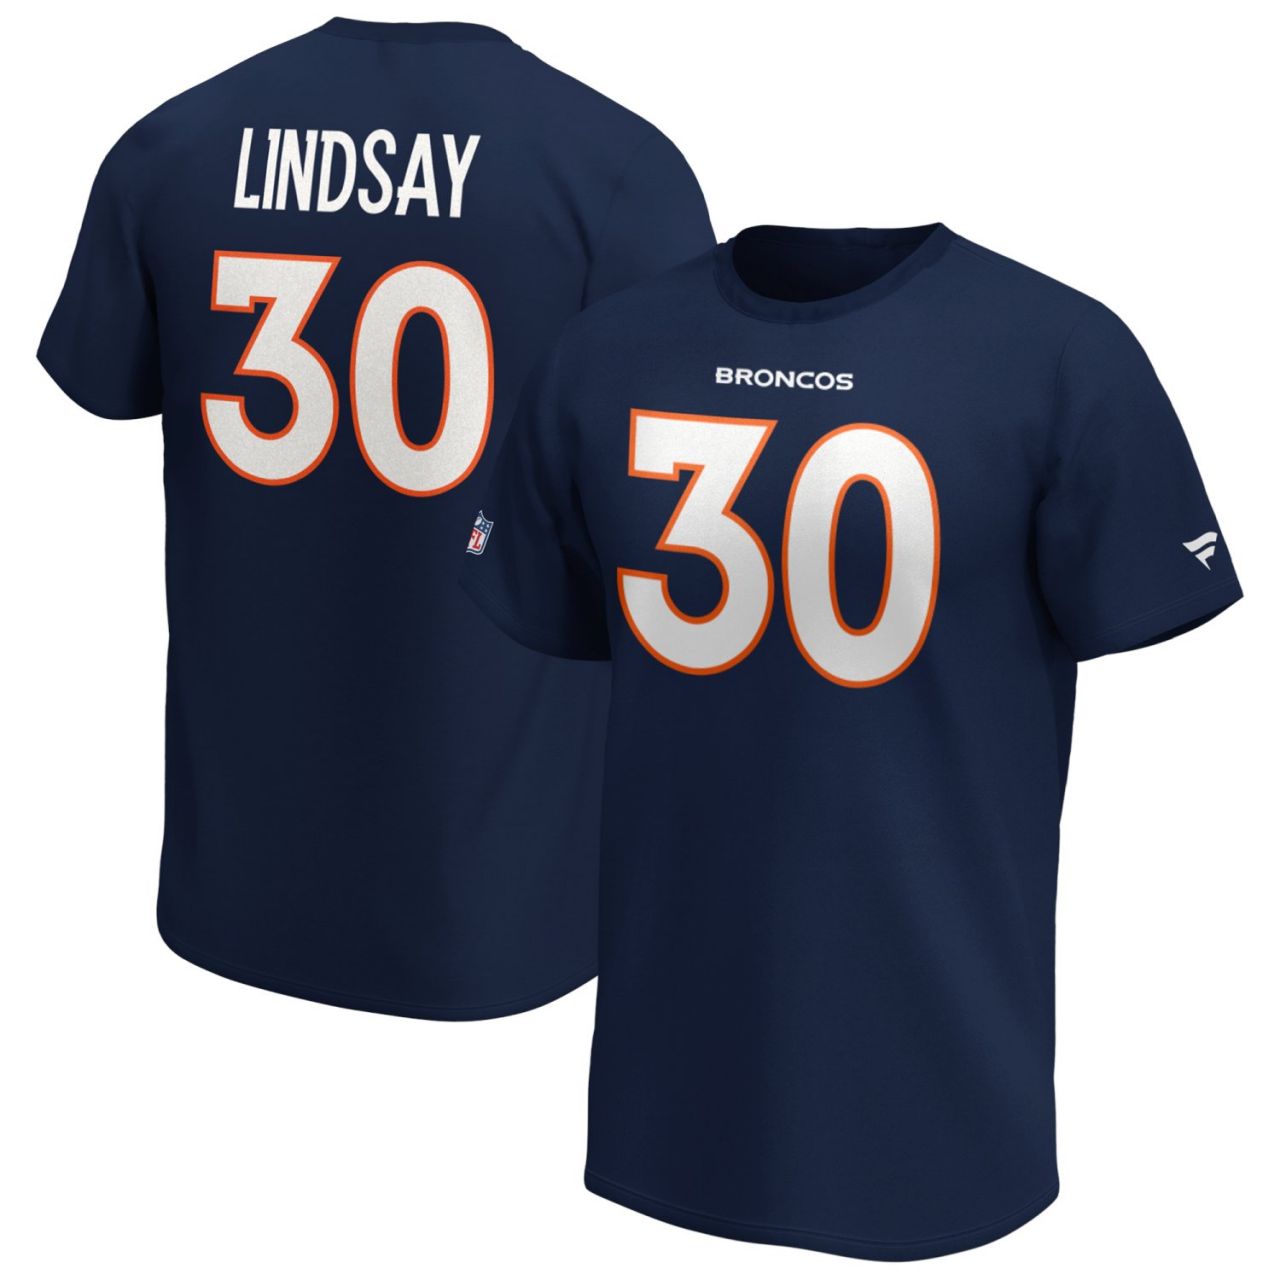 amfoo - Denver Broncos NFL Shirt #30 Phillip Lindsay